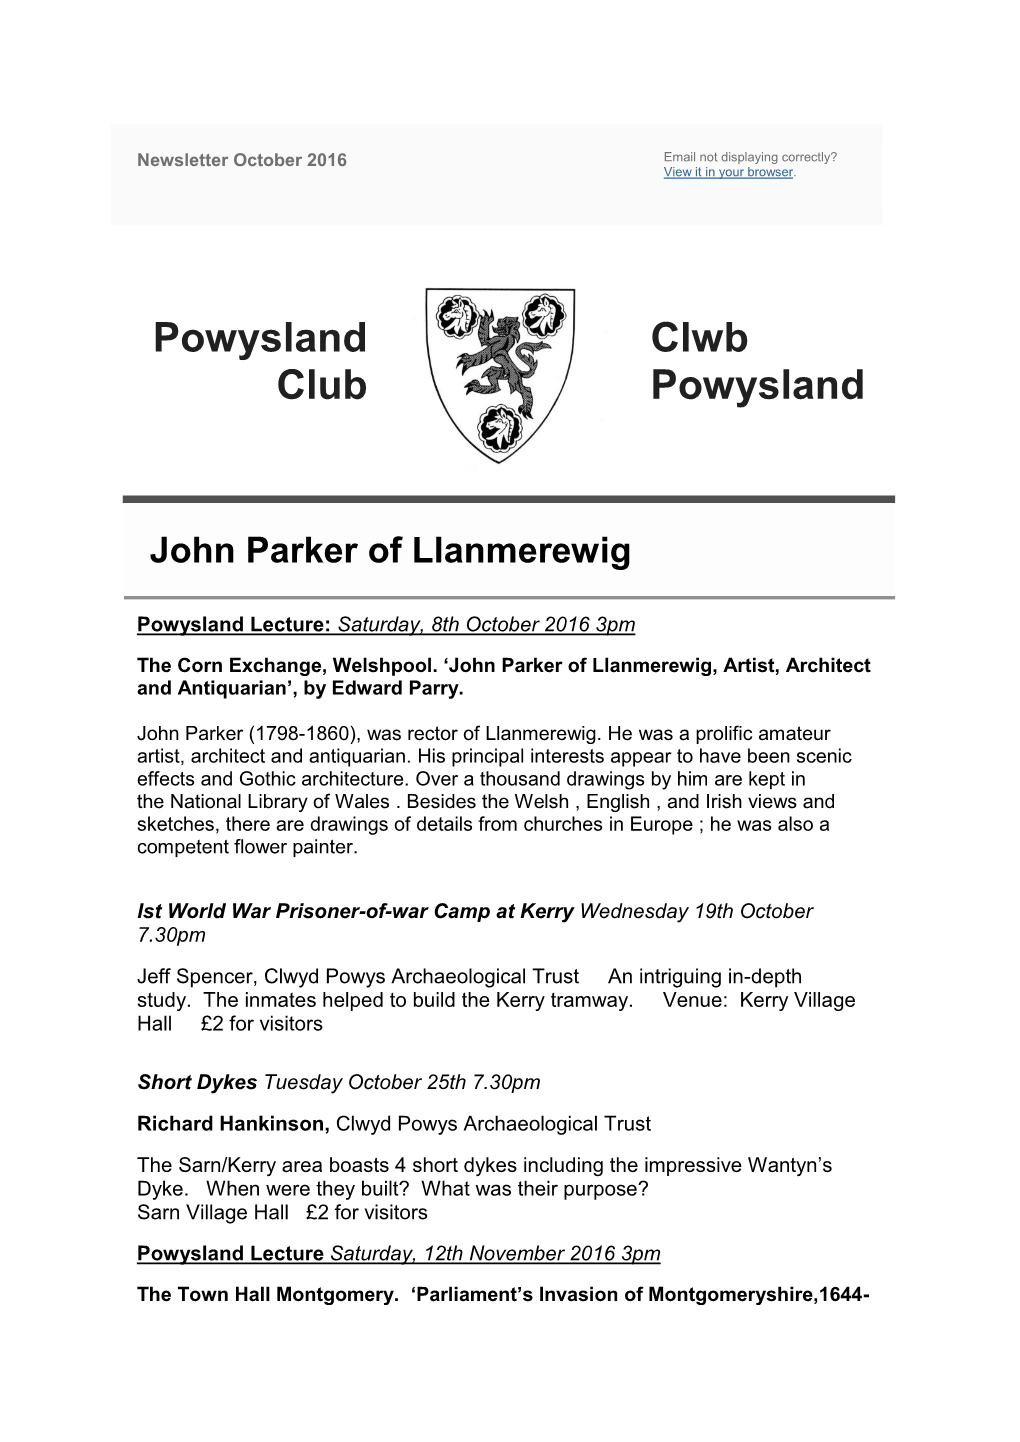 Powysland Club Clwb Powysland John Parker of Llanmerewig